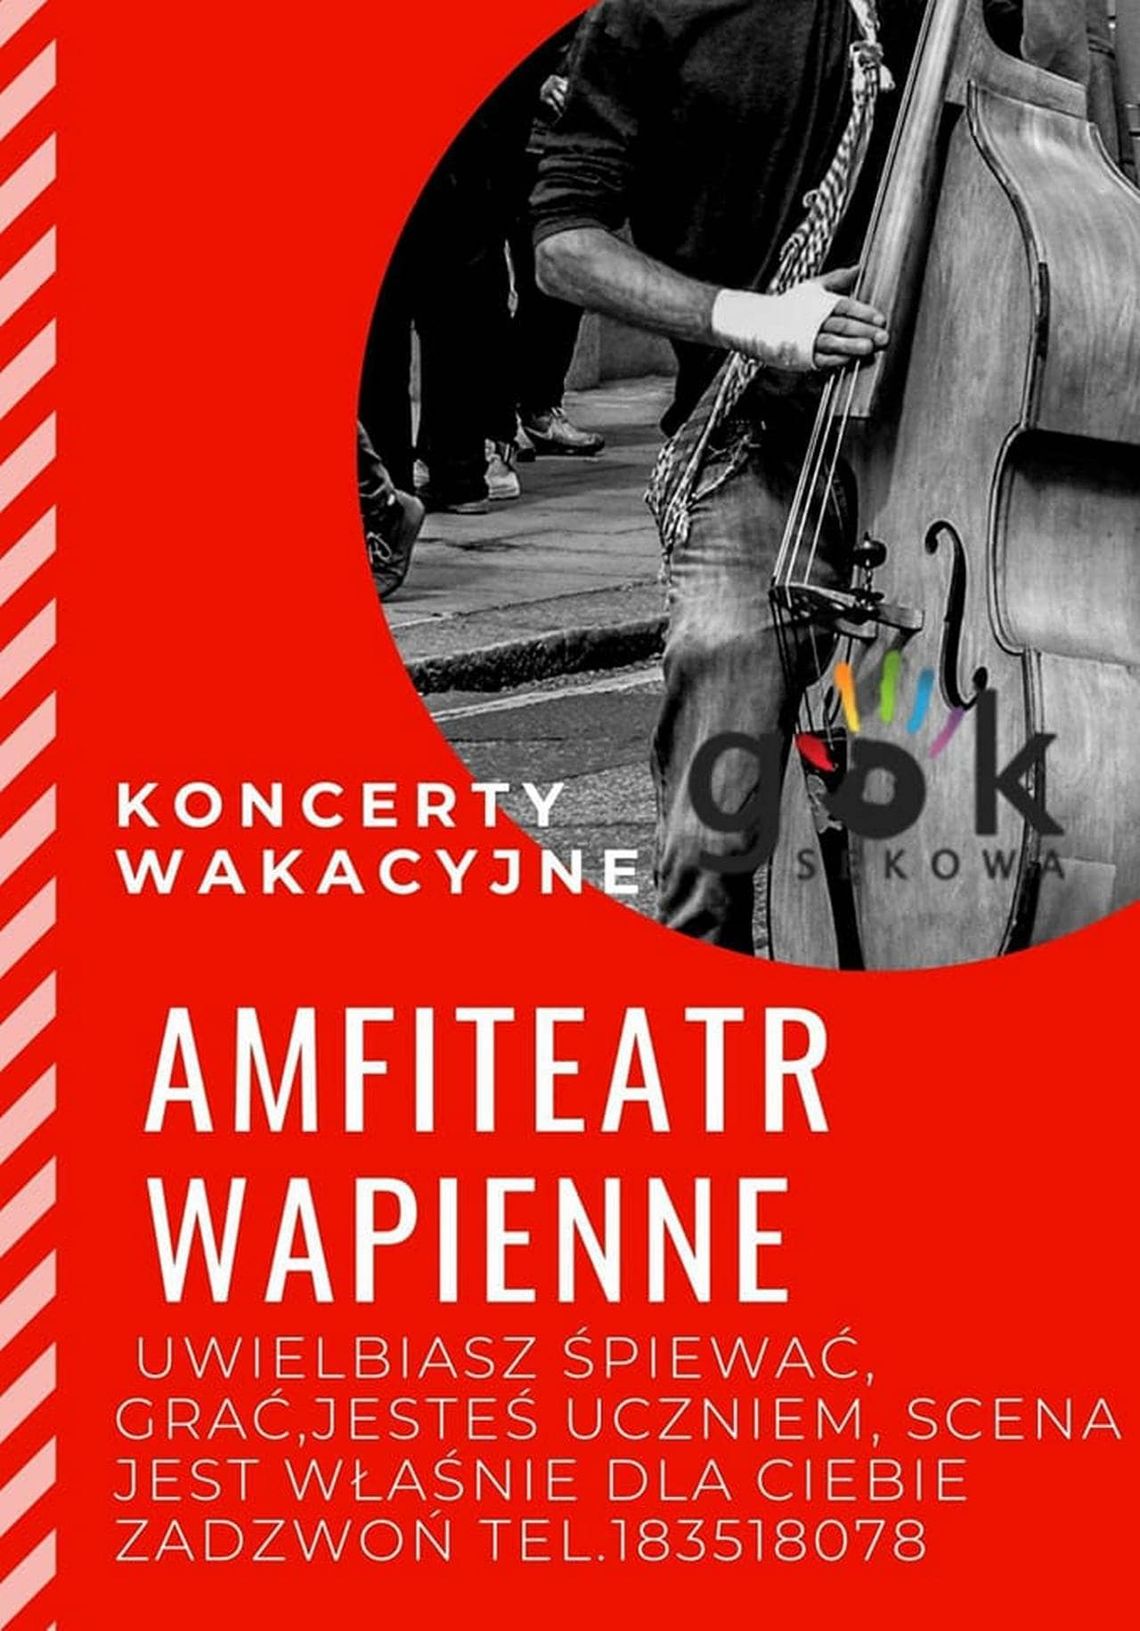 Koncerty wakacyjne – Amfiteatr Wapienne | zapowiedzi imprez – halogorlice.info